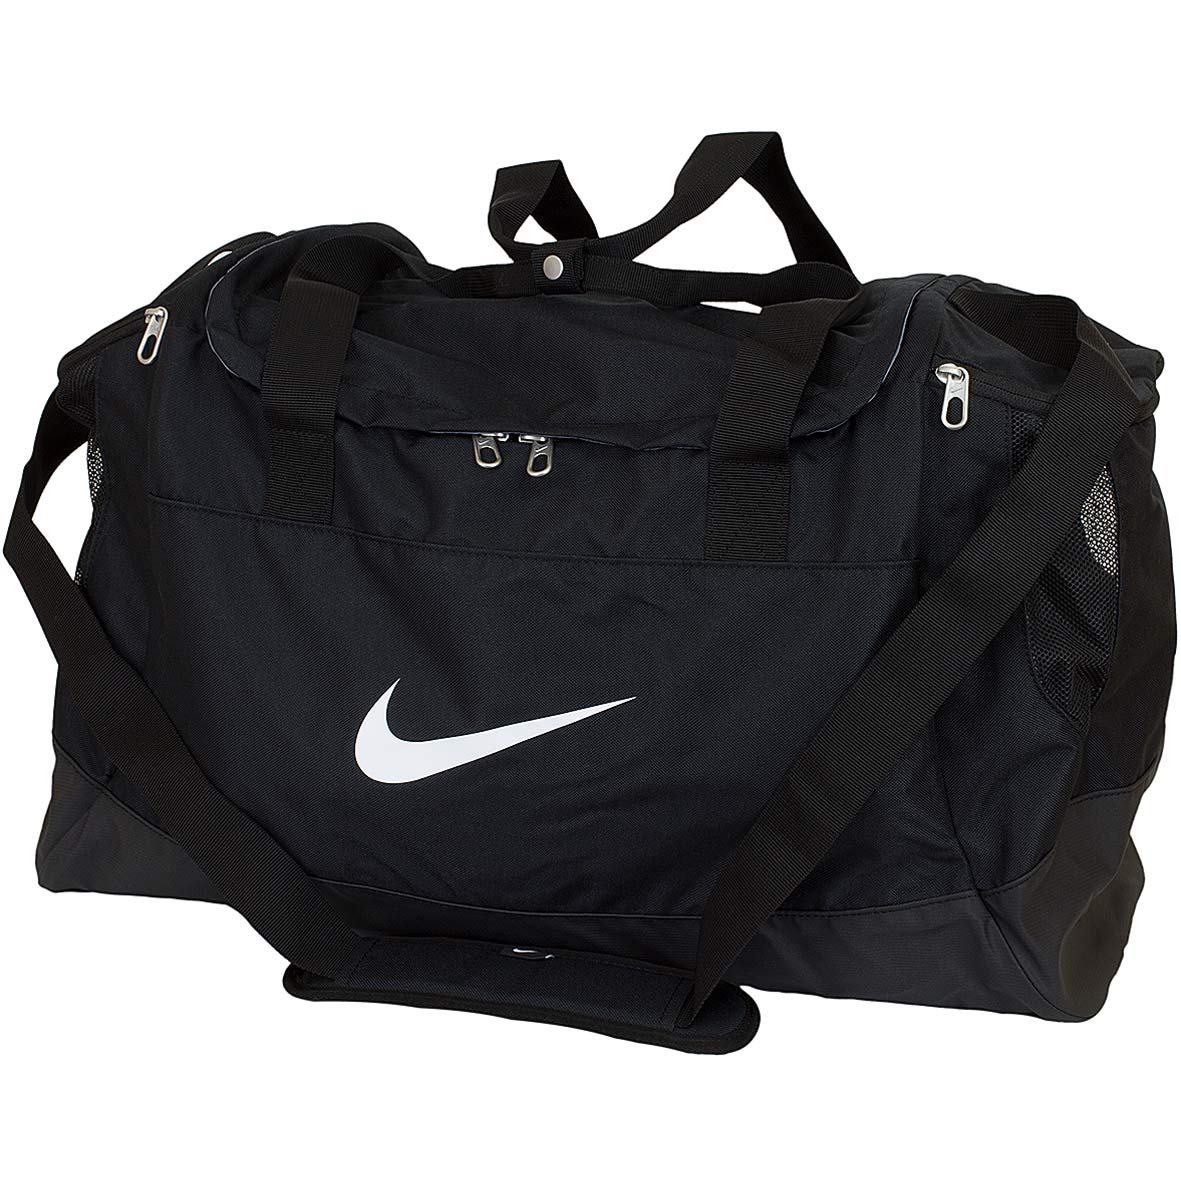 ☆ Nike Tasche Club Team Duffel Large schwarz/weiß - hier bestellen!